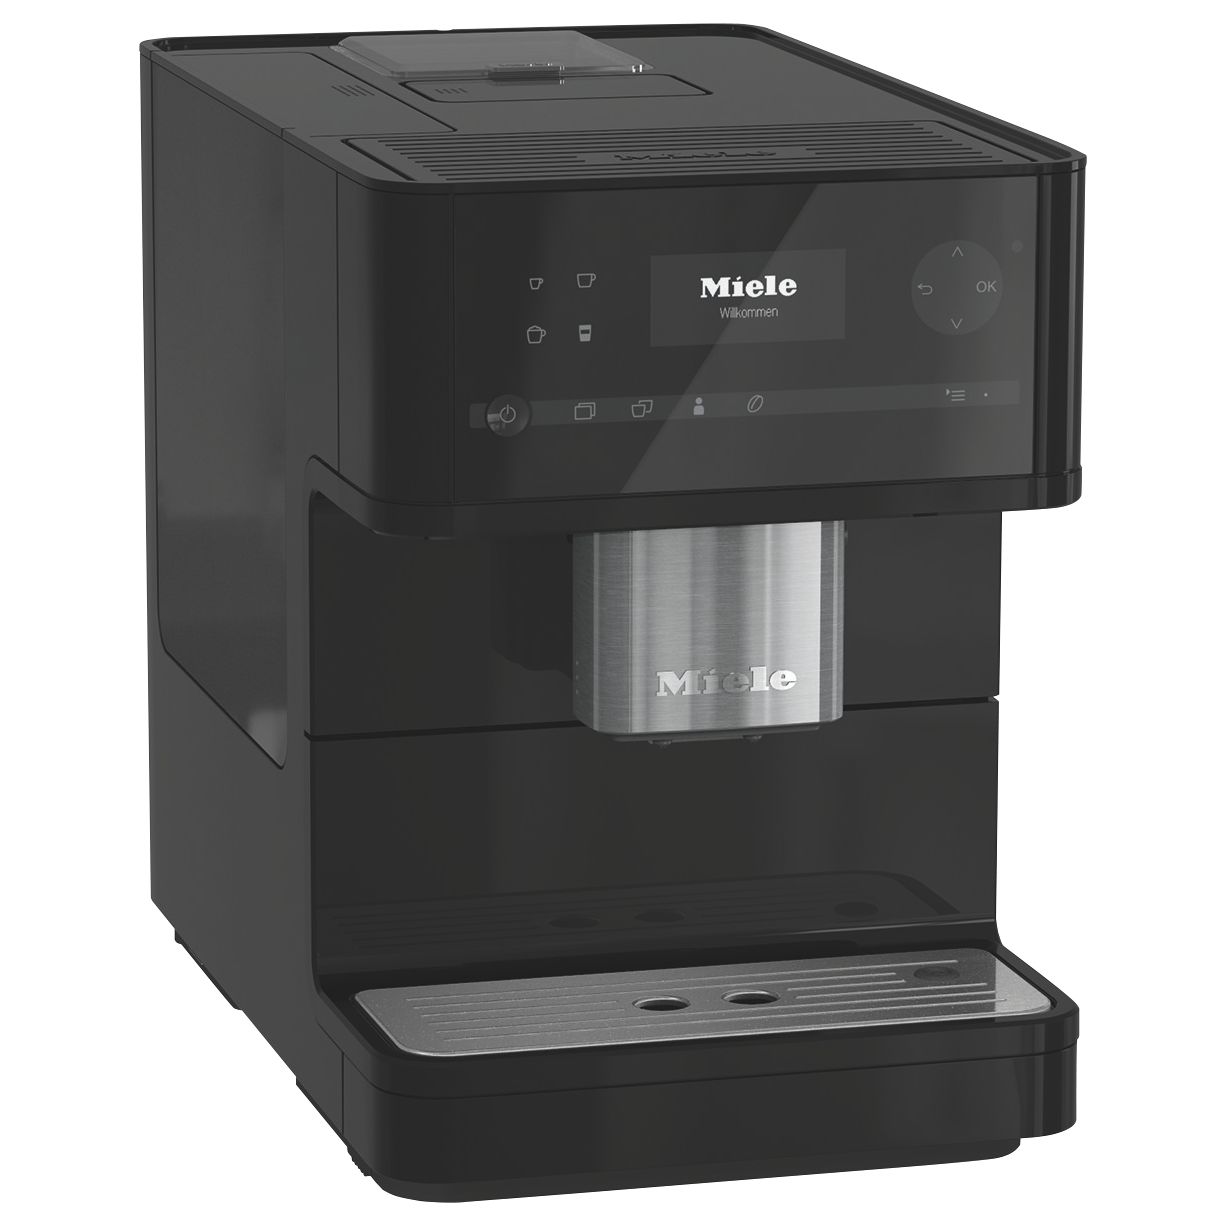 Miele CM6150 Bean-to-Cup Coffee Machine